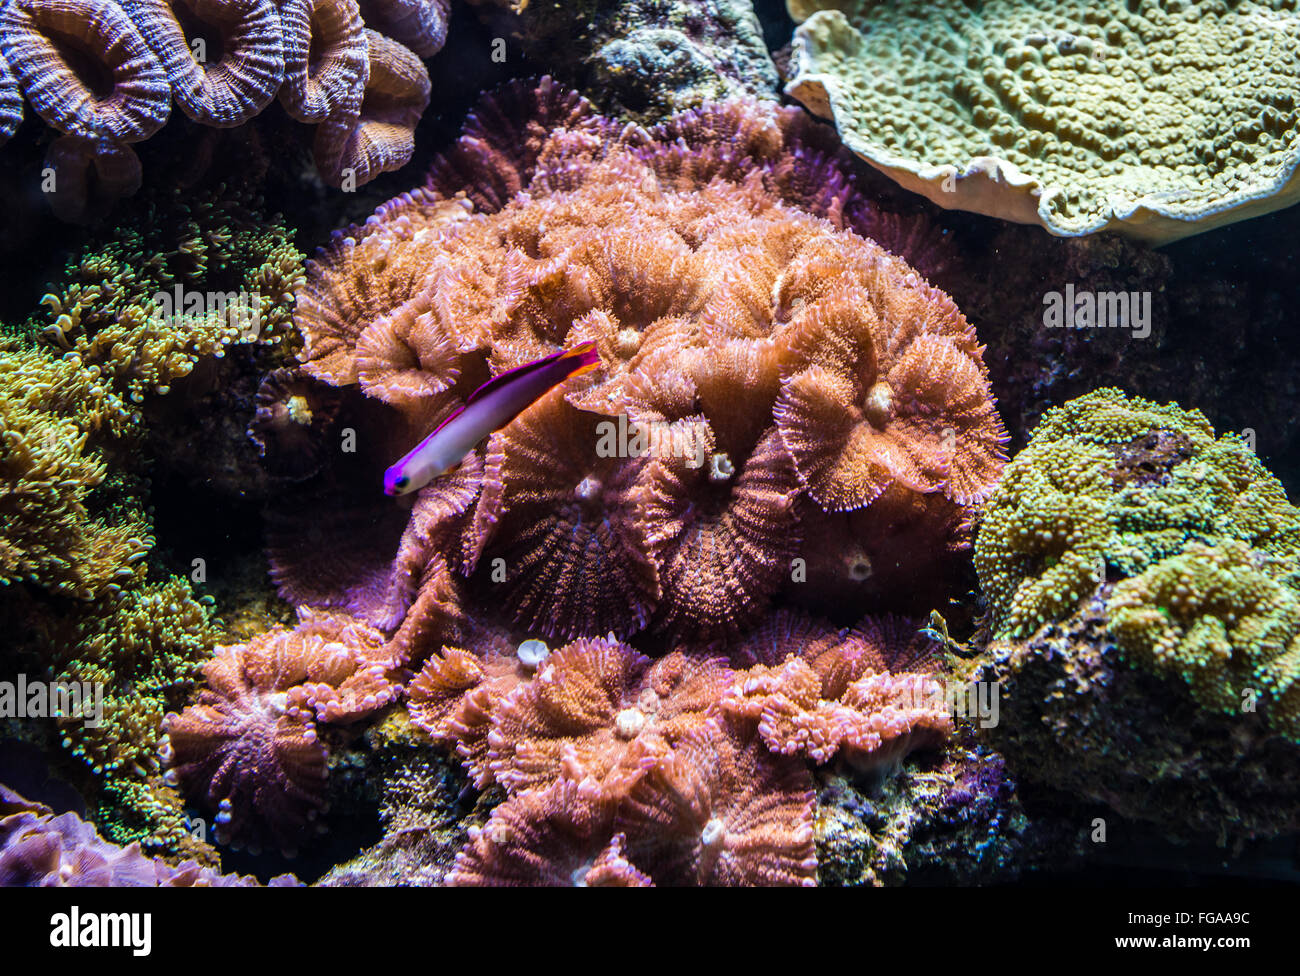 corals in saltwater aquarium Stock Photo